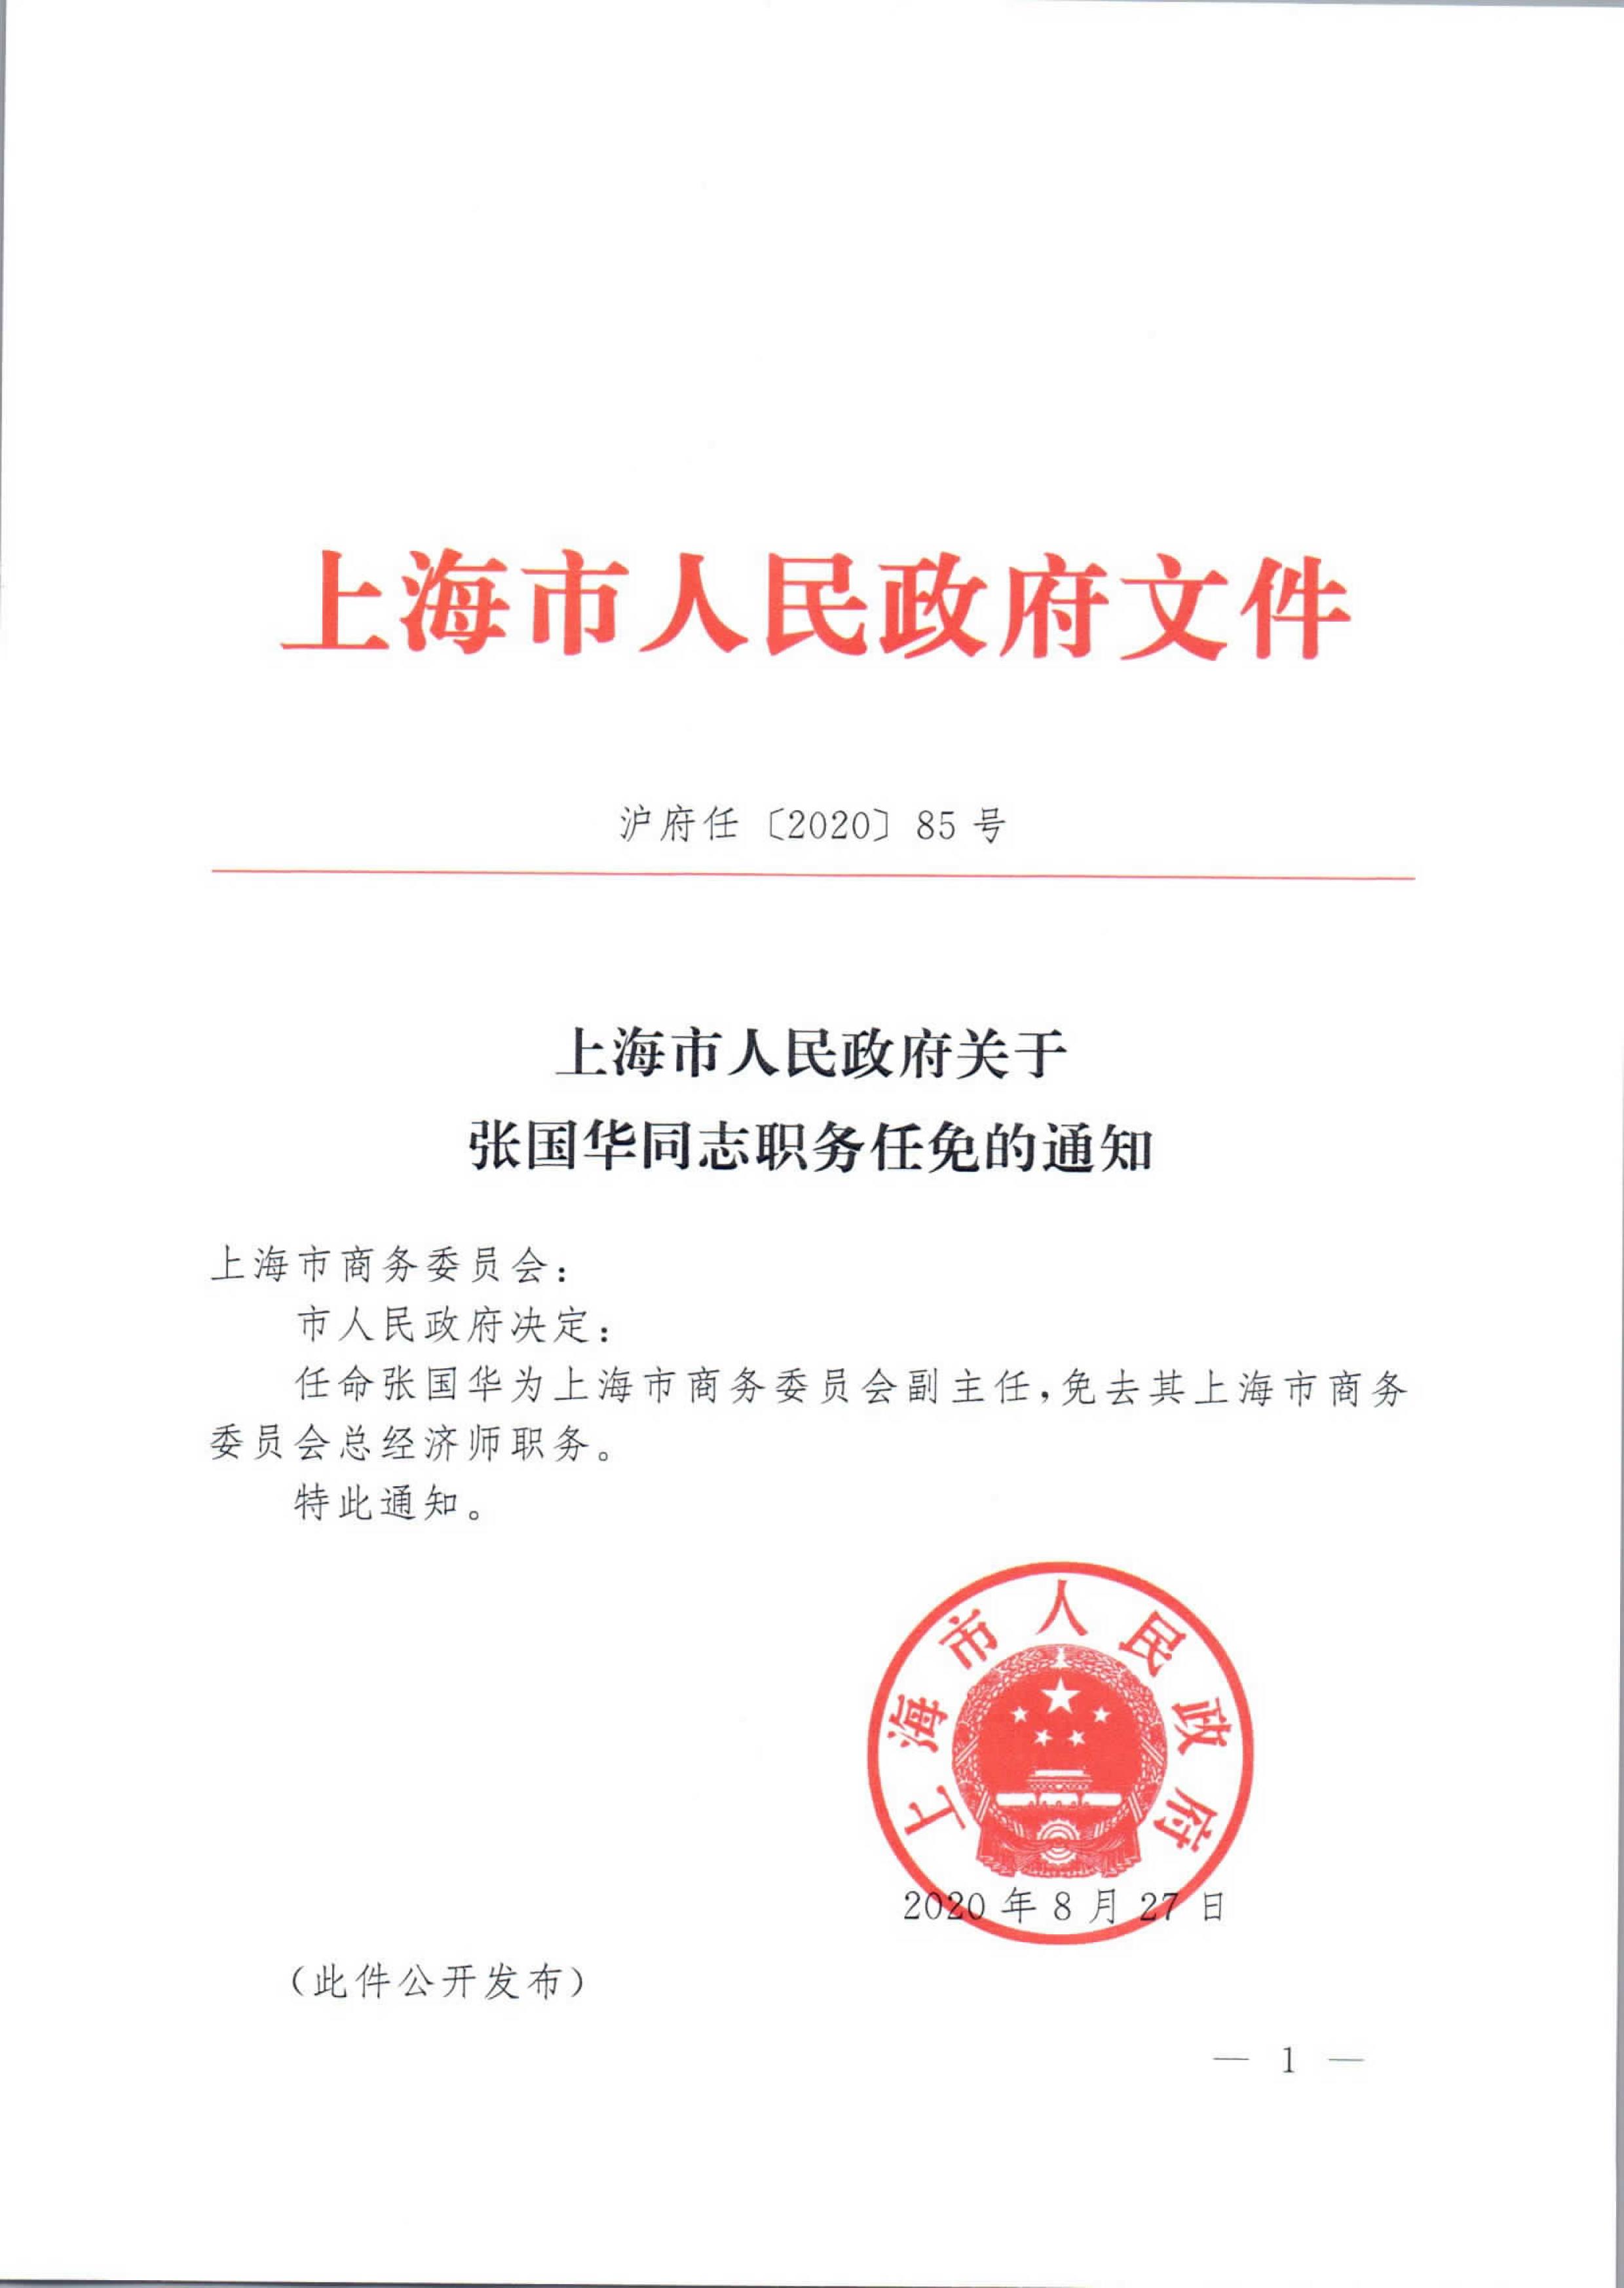 上海市人民政府关于张国华同志职务任免的通知_01